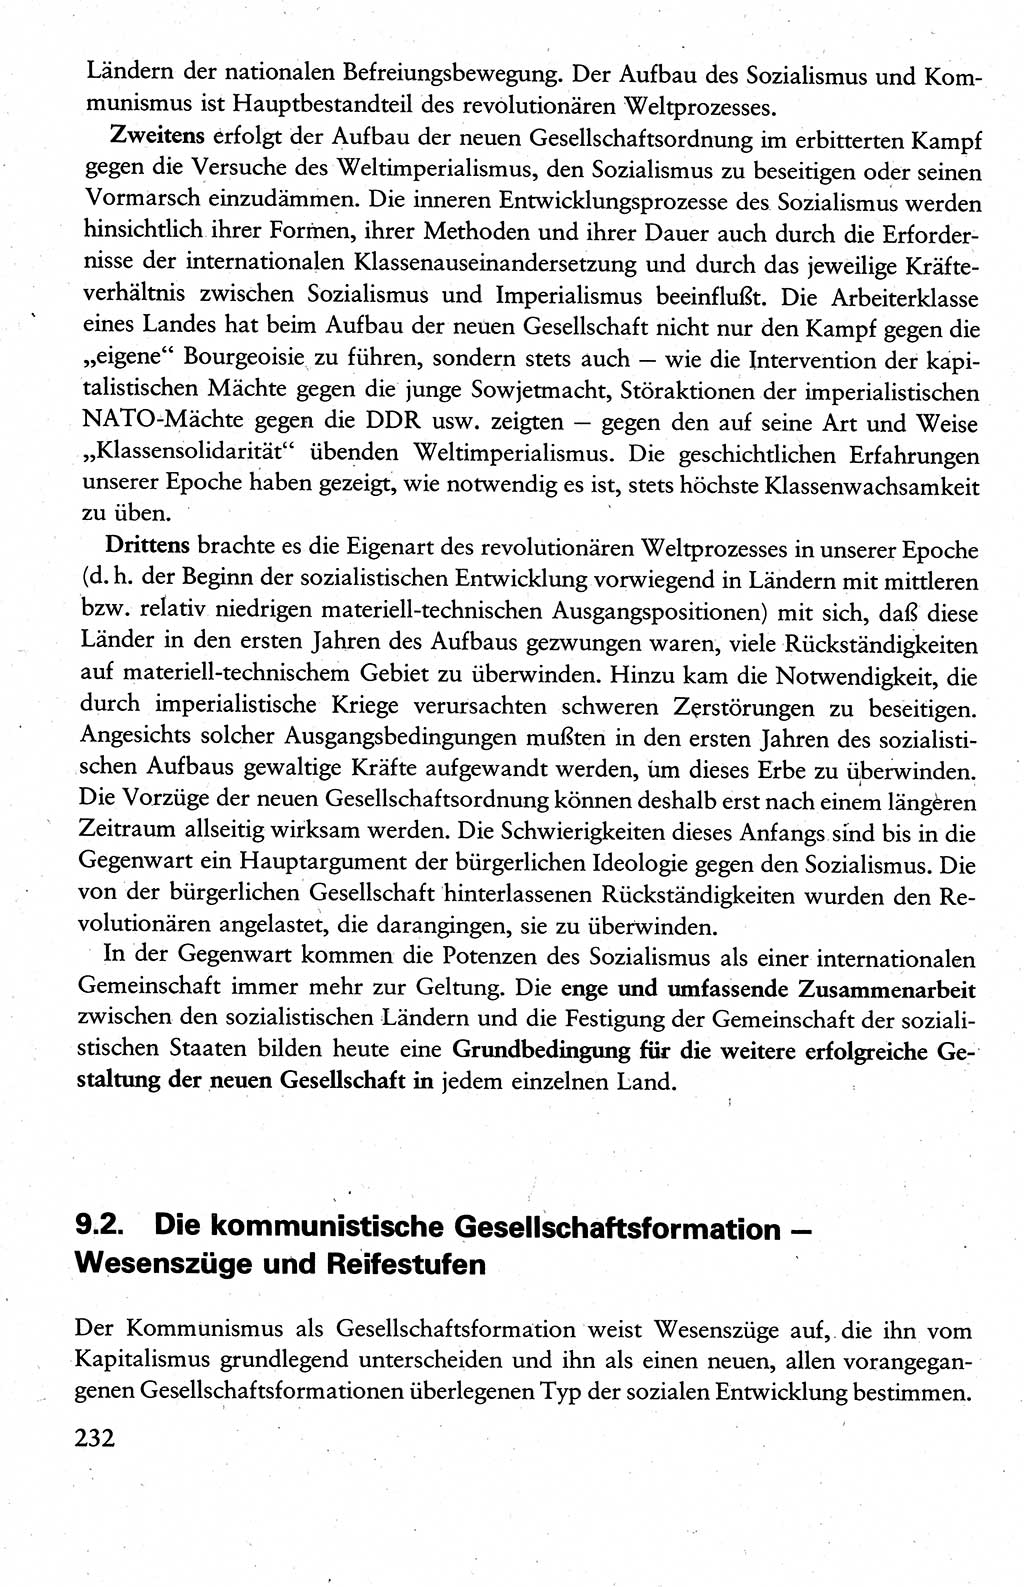 Wissenschaftlicher Kommunismus [Deutsche Demokratische Republik (DDR)], Lehrbuch für das marxistisch-leninistische Grundlagenstudium 1983, Seite 232 (Wiss. Komm. DDR Lb. 1983, S. 232)